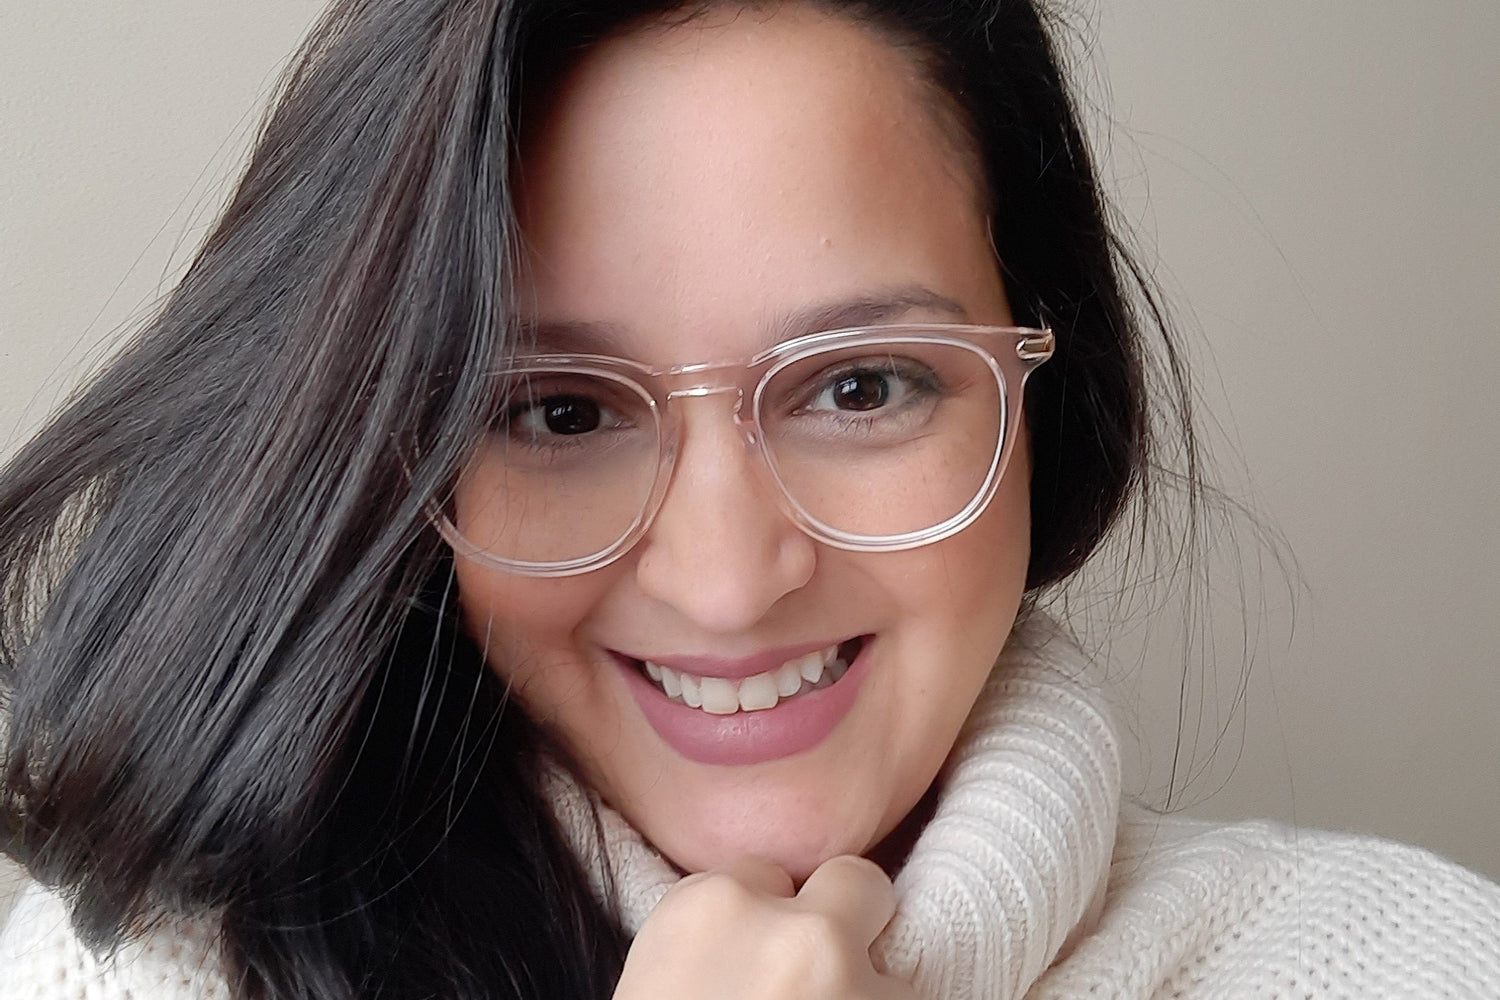 Do Blue Light Glasses Feel Weird? | KOALAEYE OPTICAL